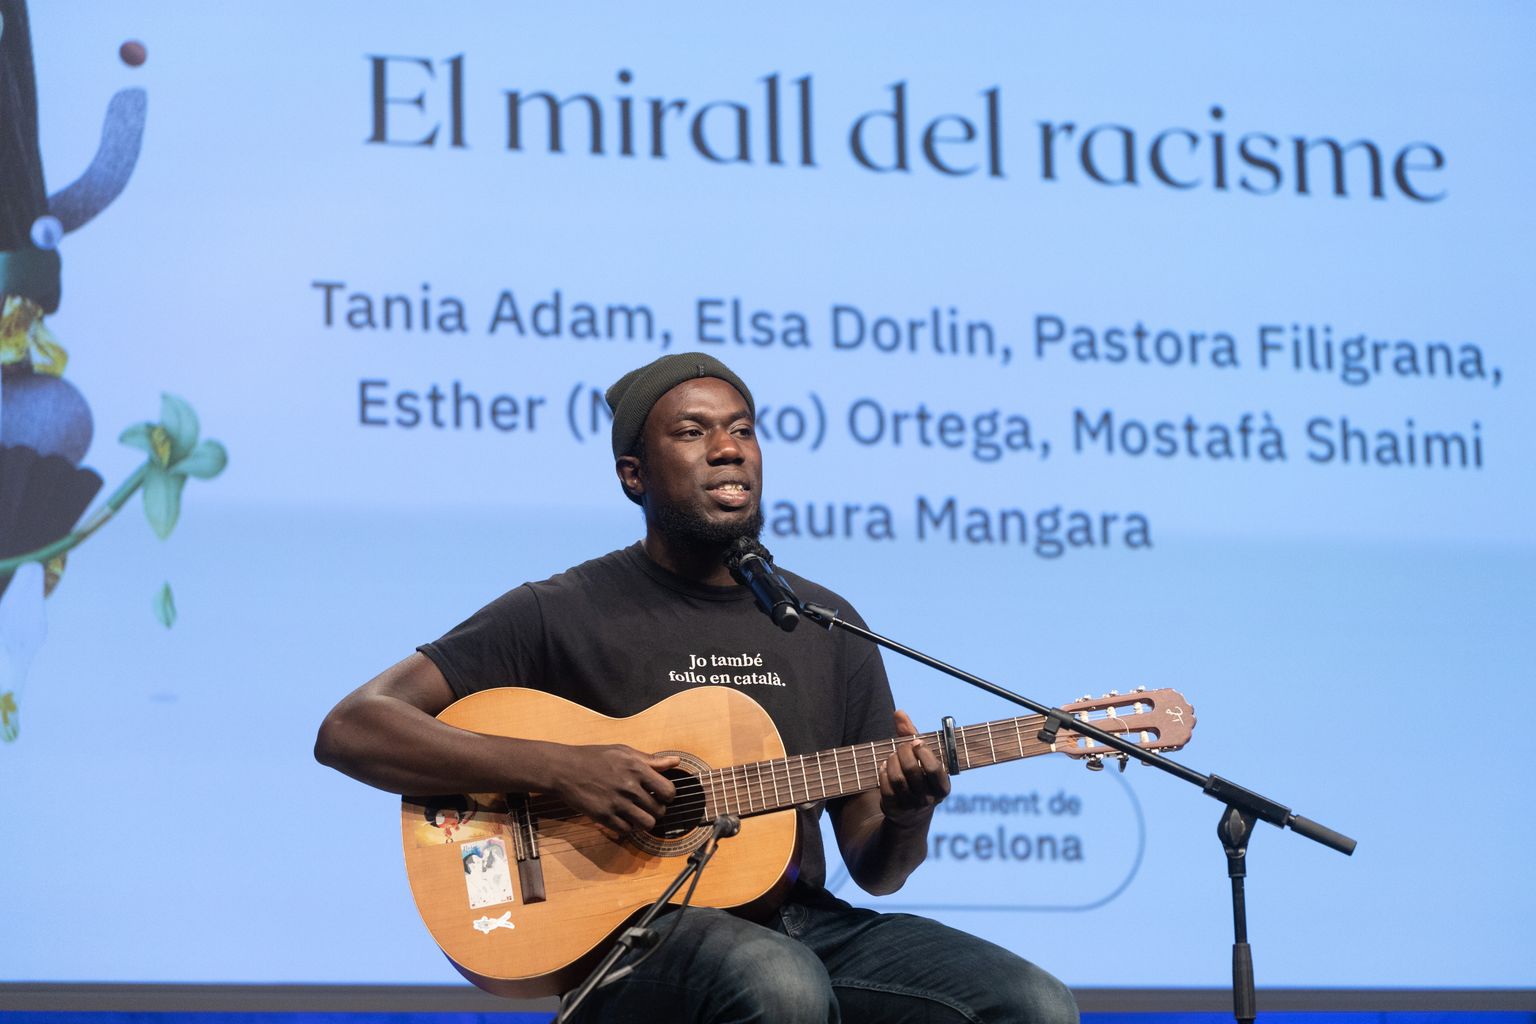 Actuació musical de l'artista Daura Mangara durant la taula rodona "El mirall del racisme" a la plaça de Joan Coromines